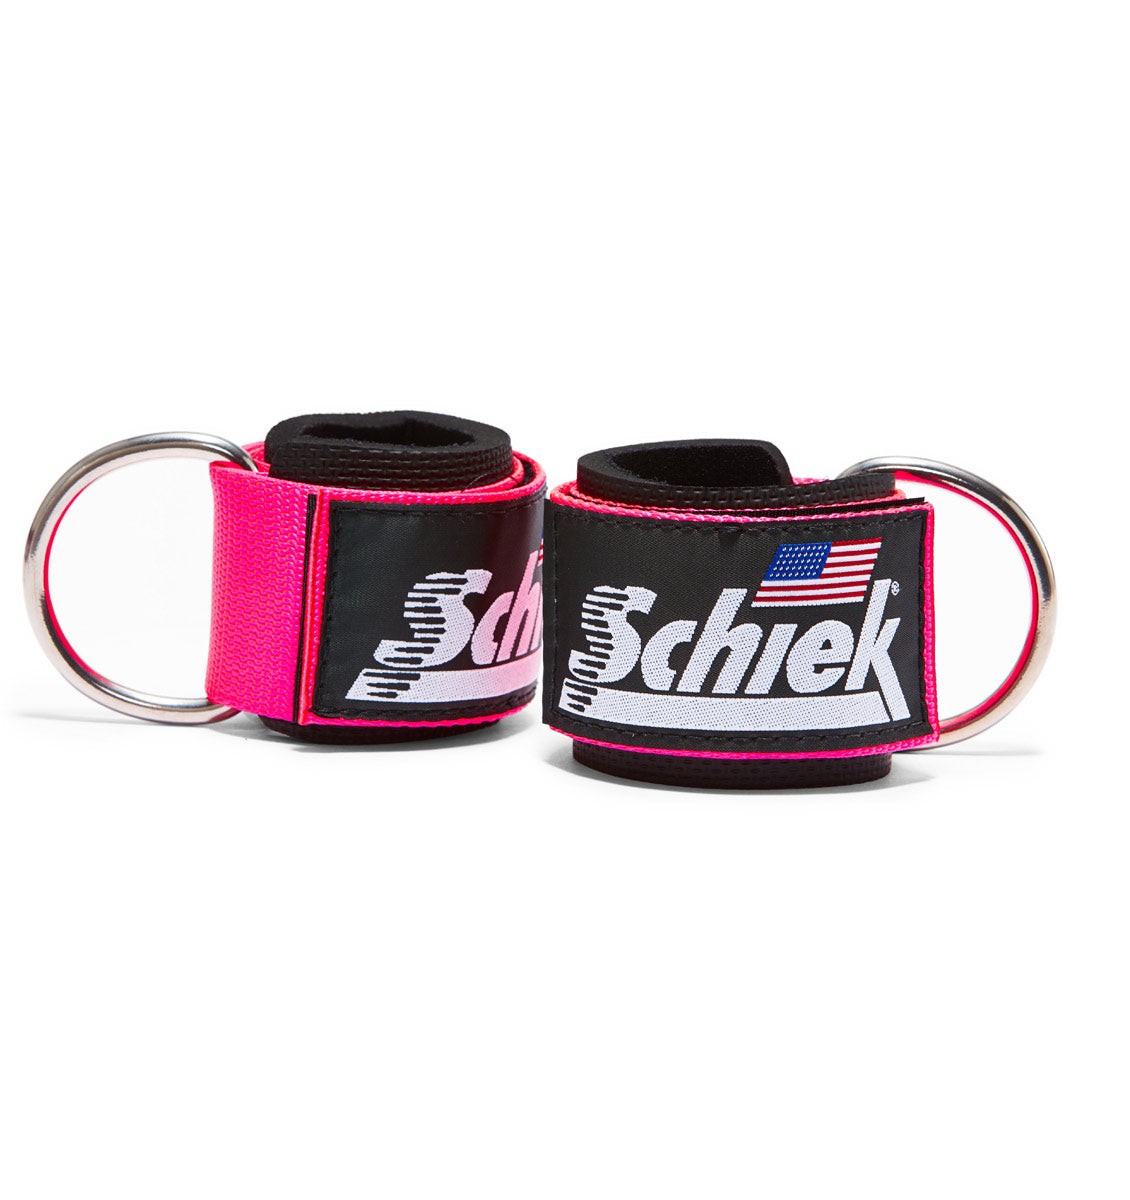 1700 Schiek Ankle Straps Cuffs Pink Pair